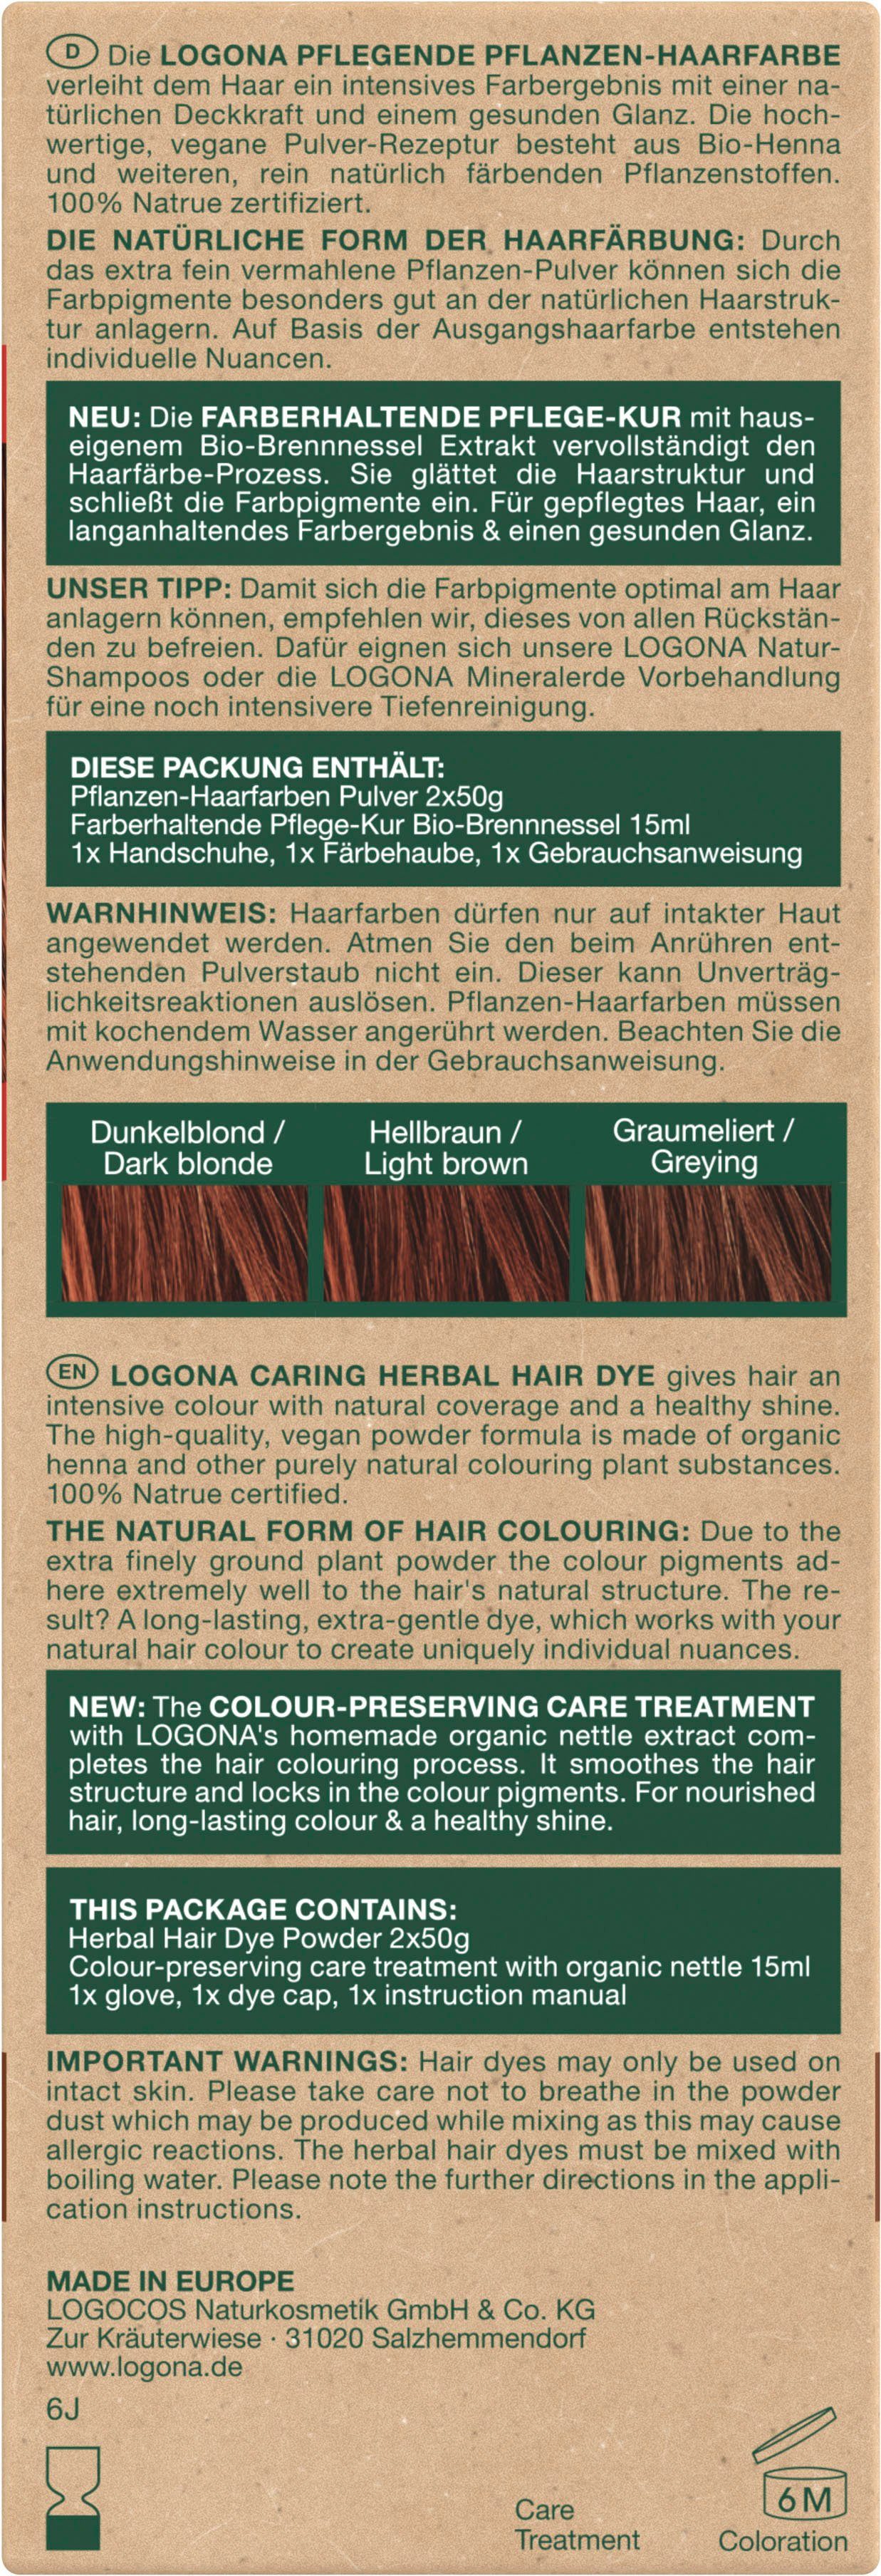 LOGONA Haarfarbe Pflanzen-Haarfarbe Mahagonirot Pulver 05